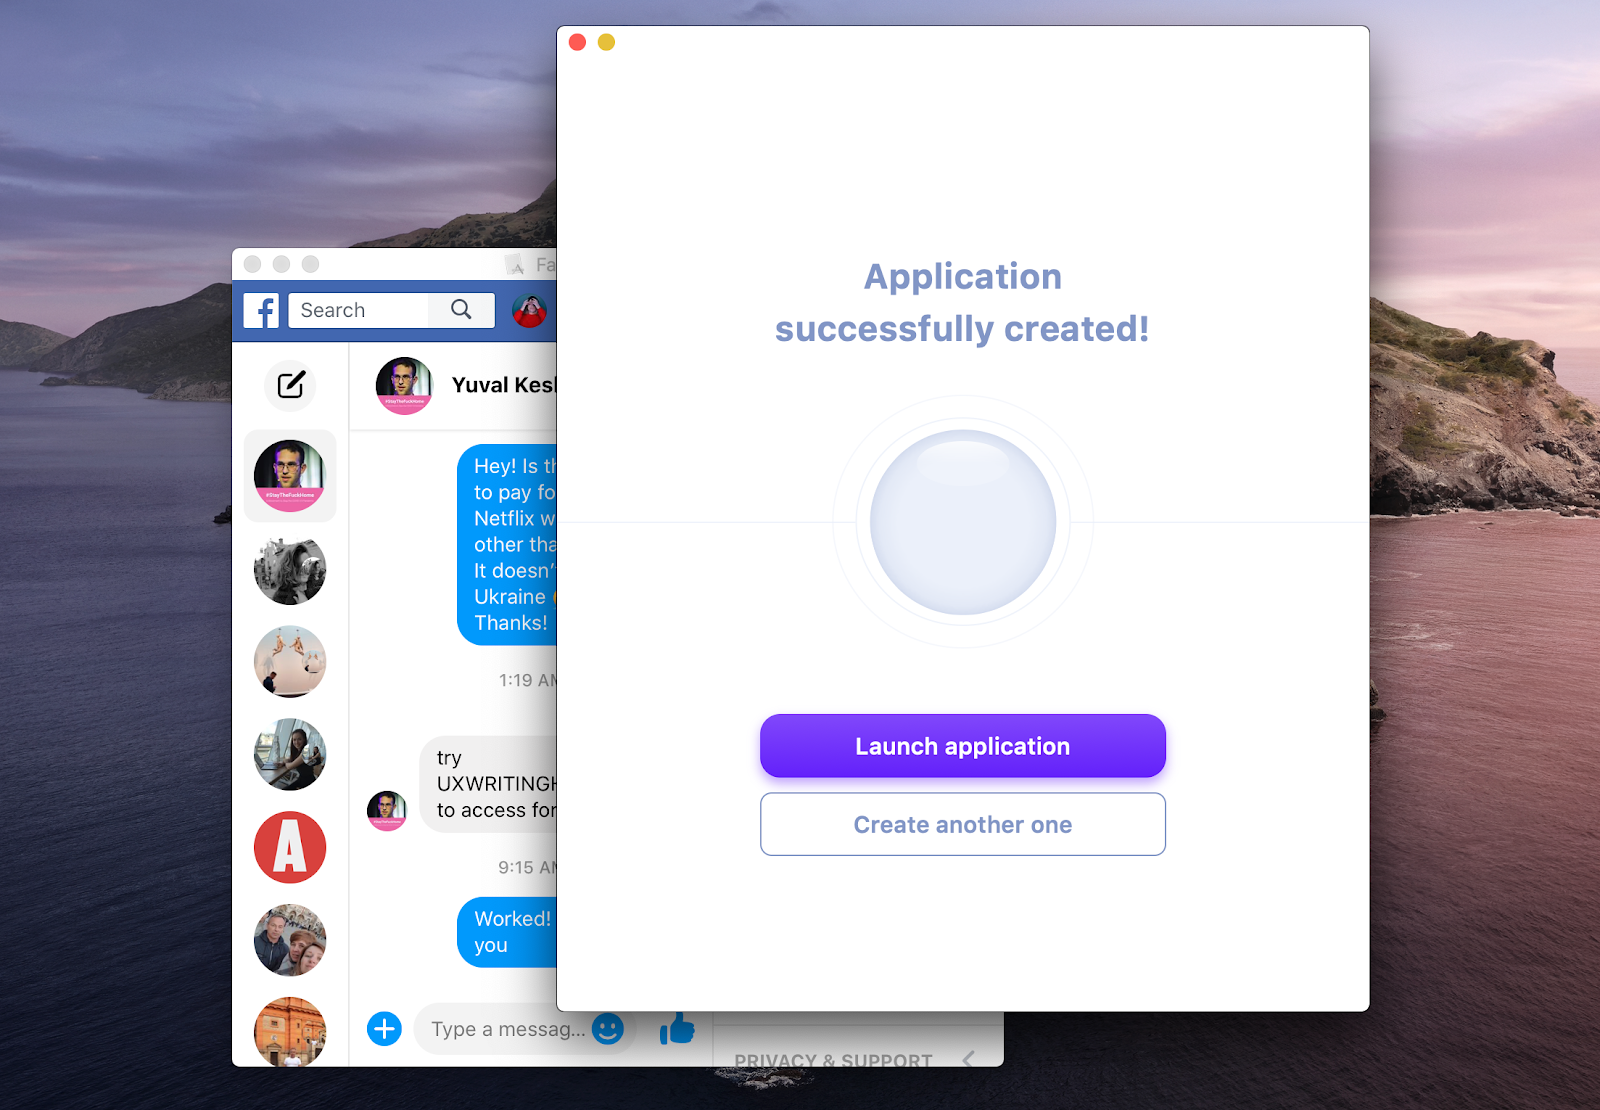 facebok messenger mac app